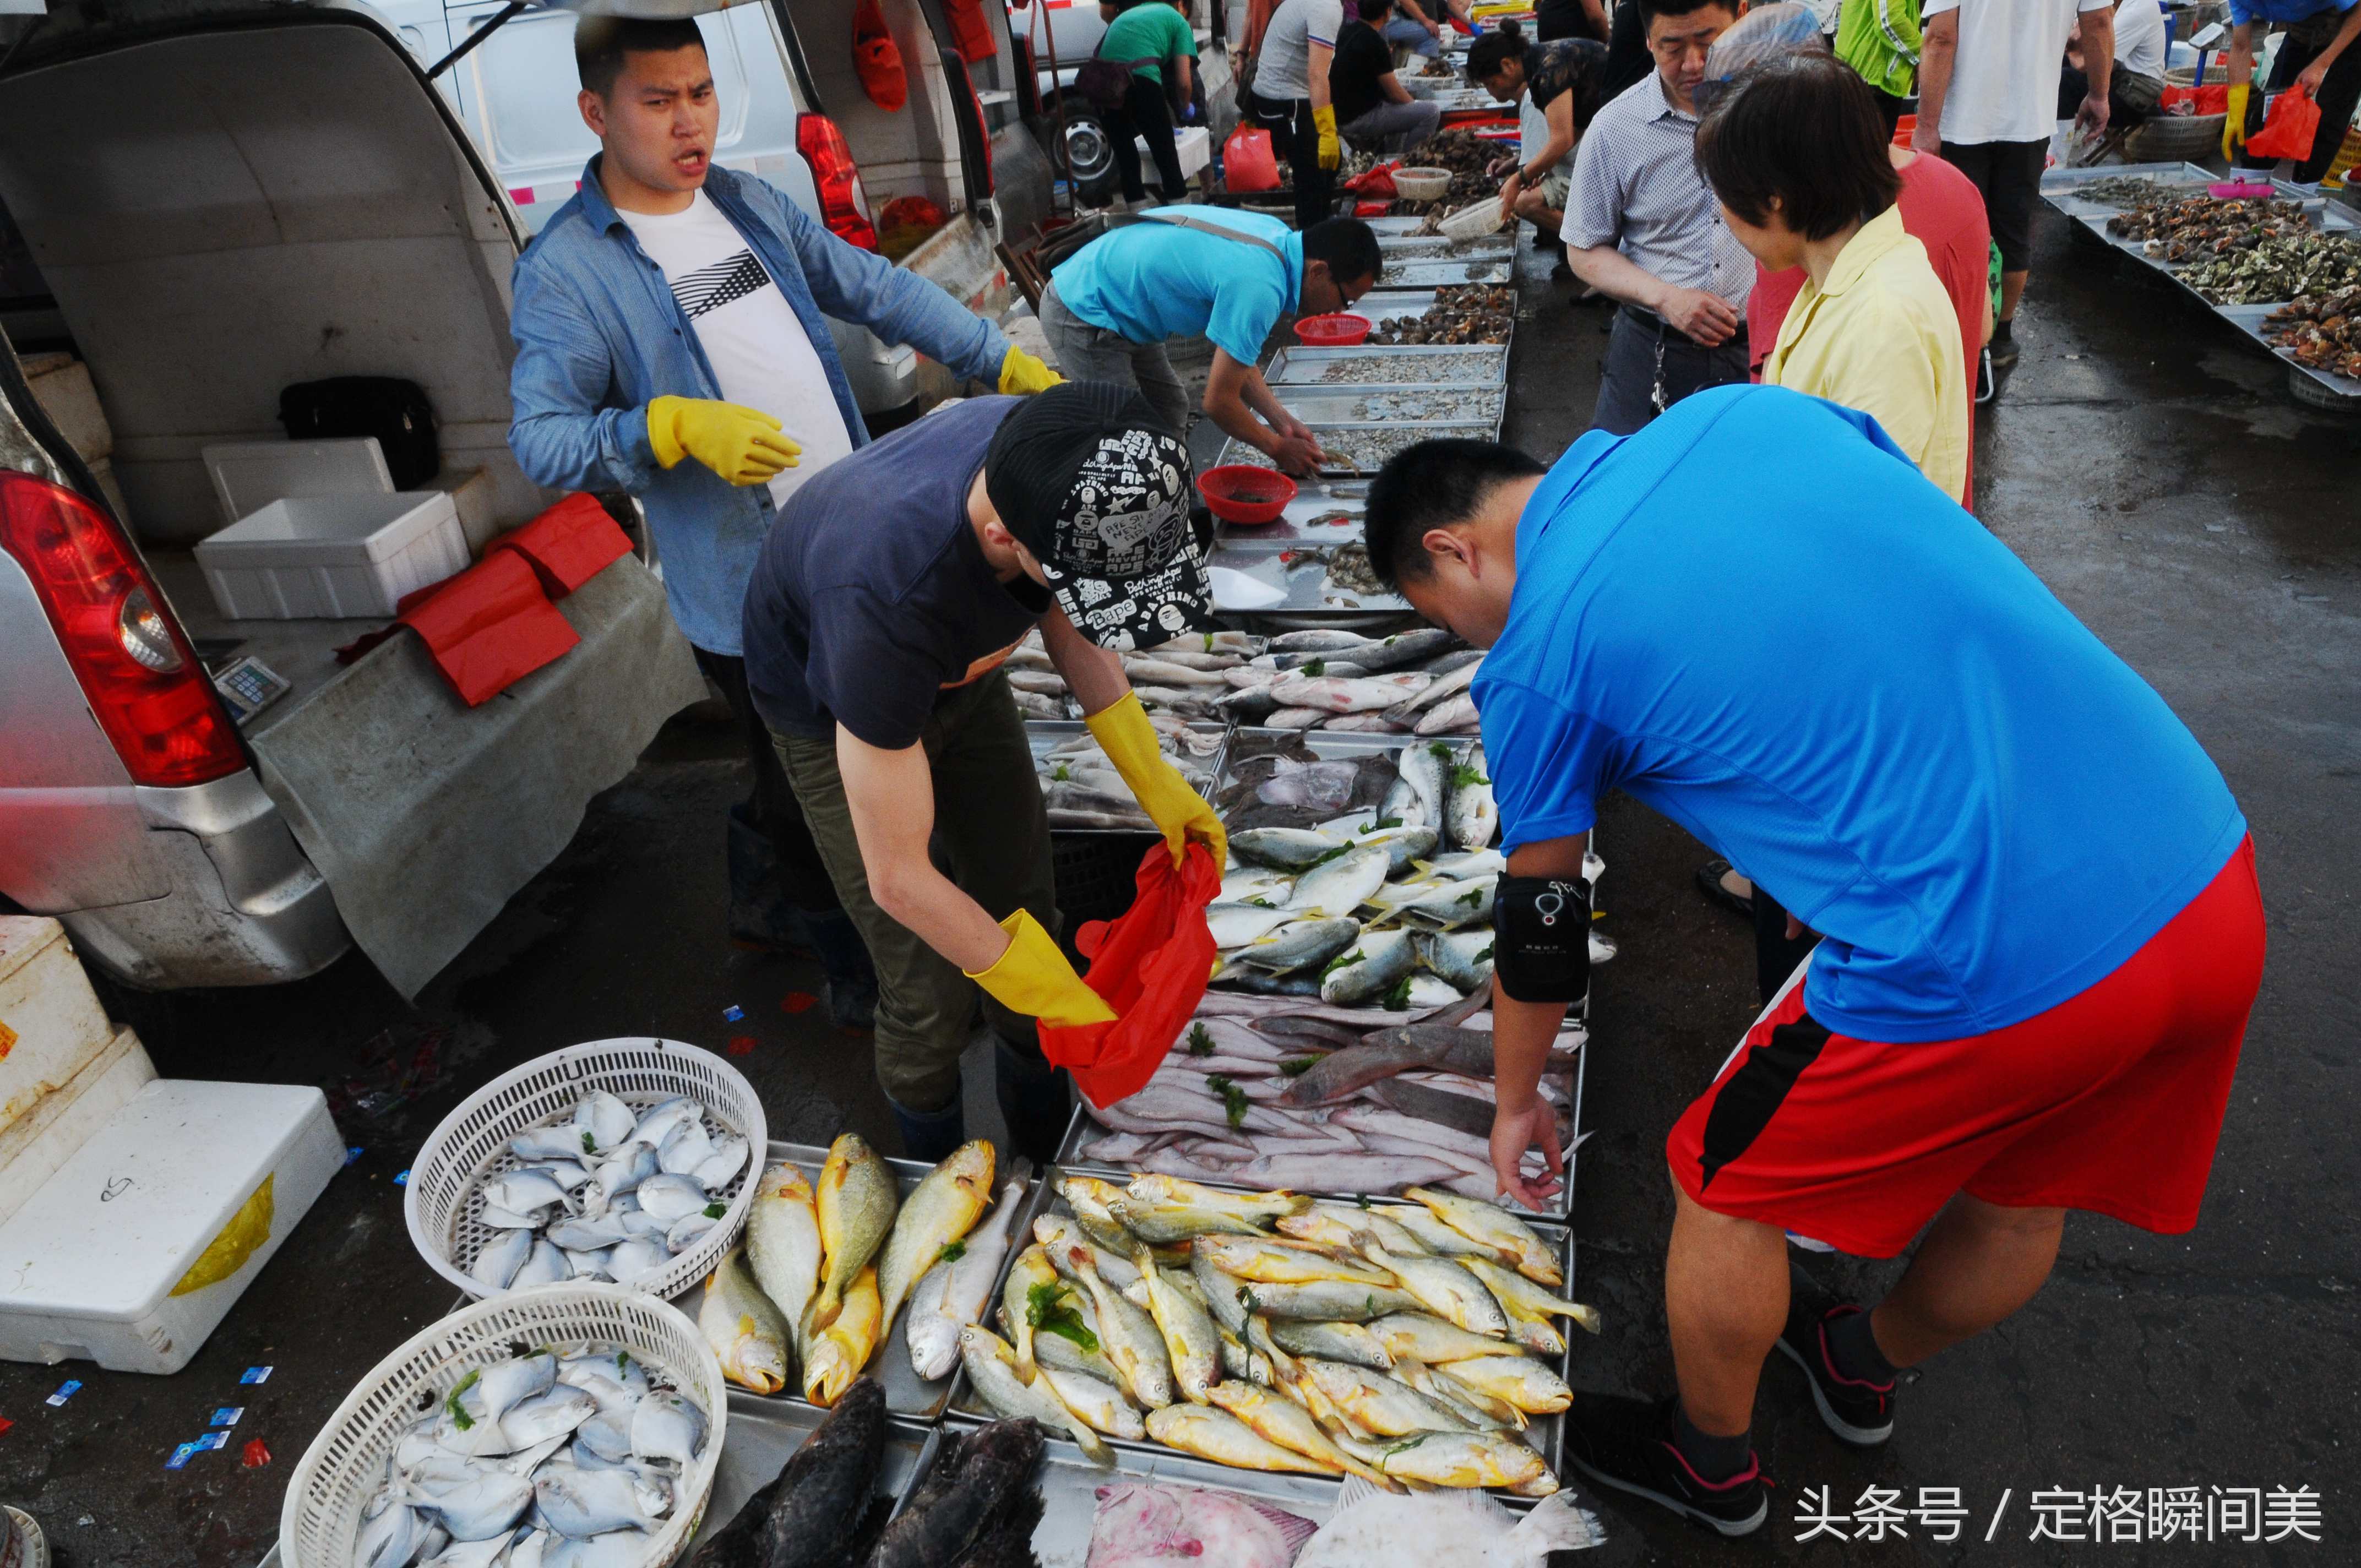 炎热酷暑 夏季海鲜市场销售红火 鲳鱼18元一斤 半小时送货两大车